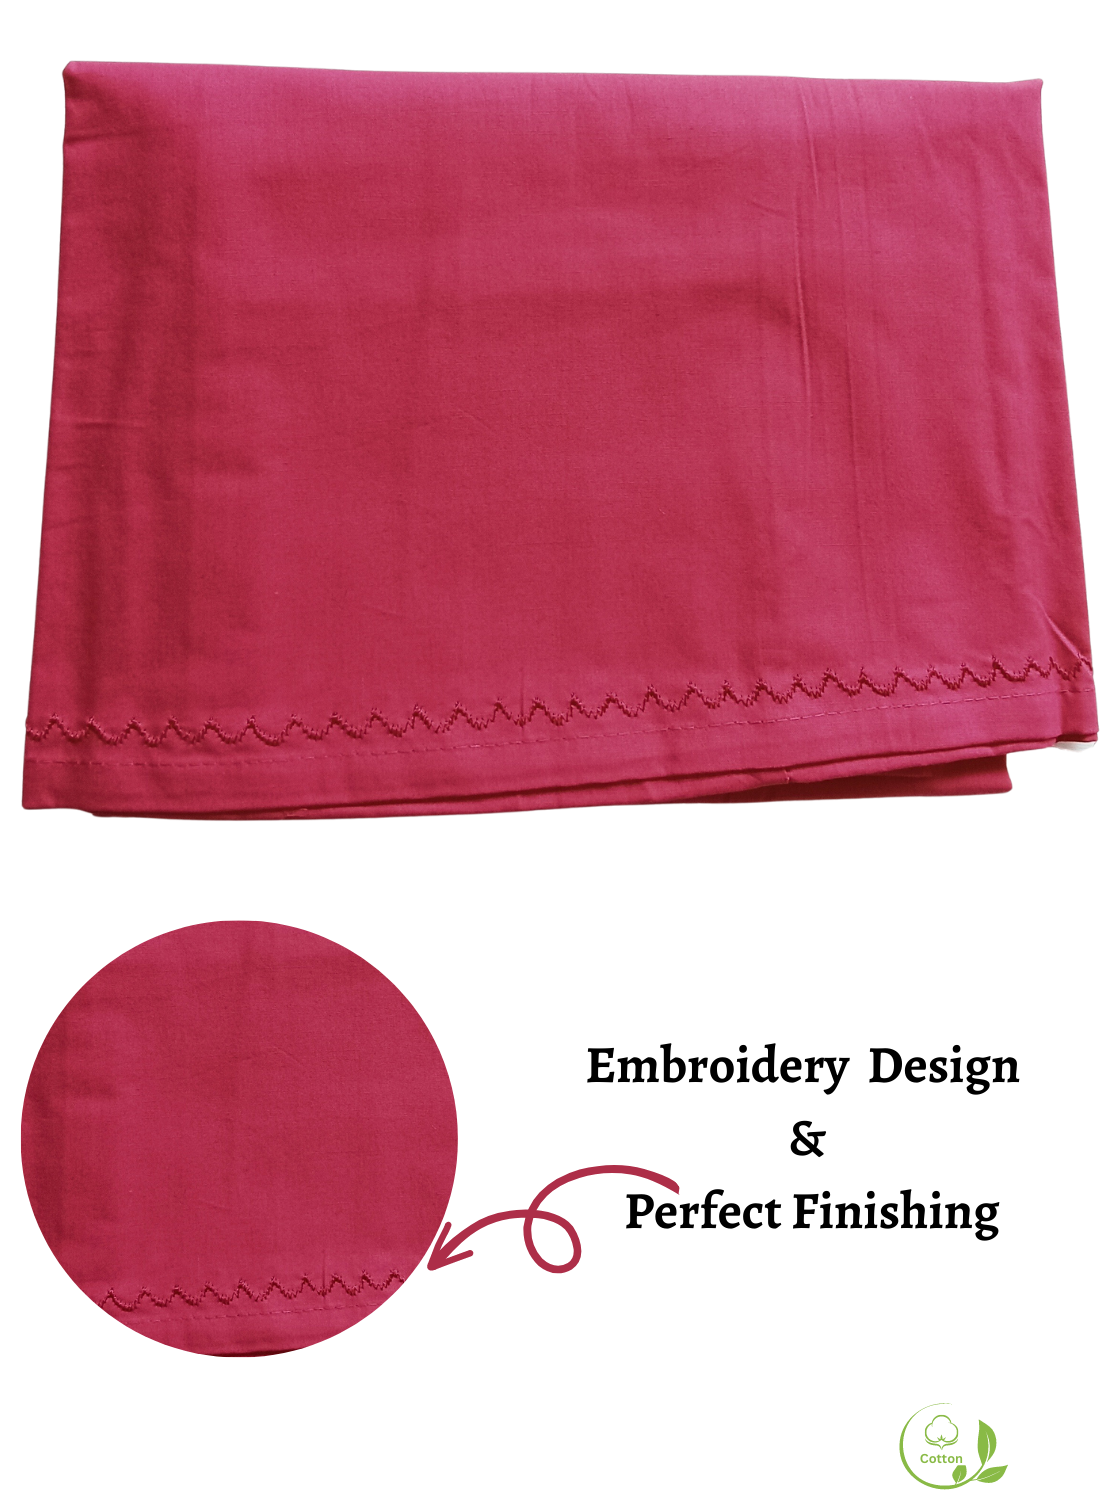 MANGAI Embroidery Superior Cotton Petticoats - 8 Part | Multicolor Premium Cotton Petticoat's